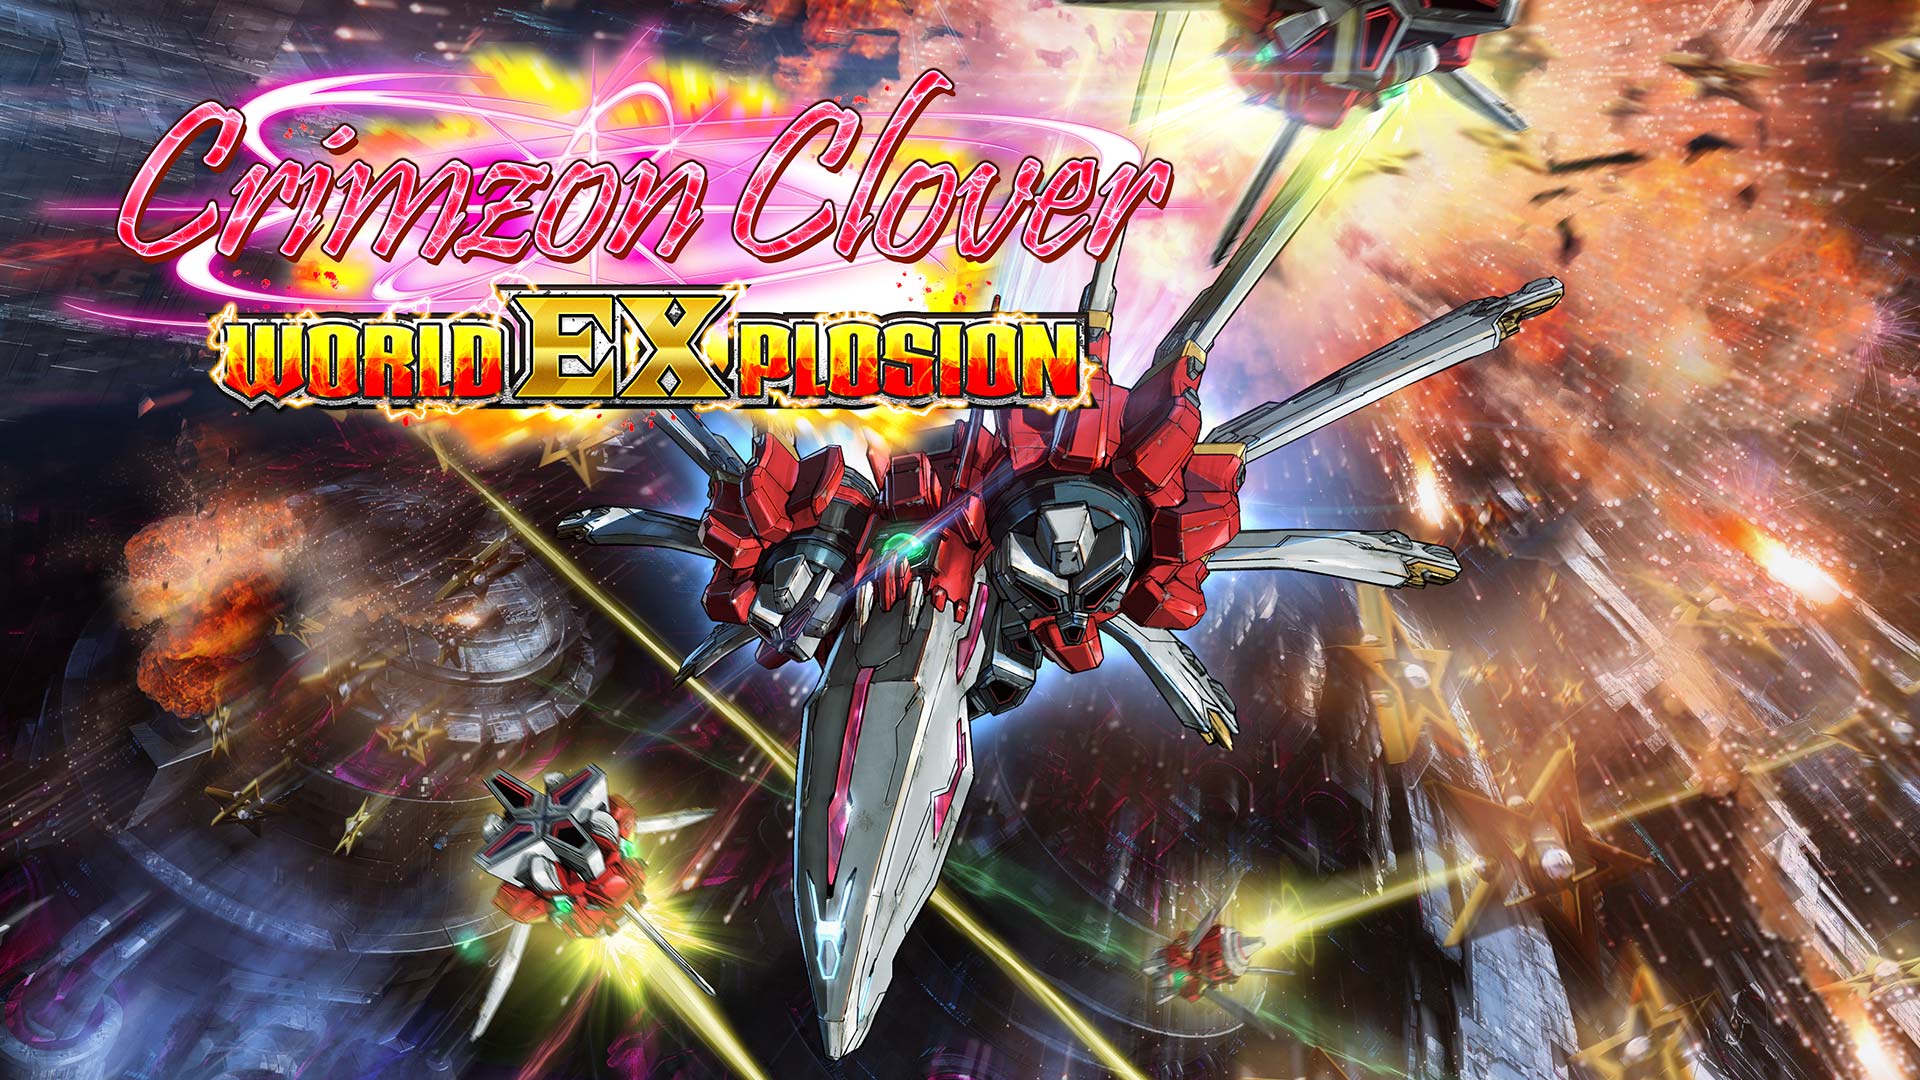 Crimzon Clover World Explosion 10 23 20 1